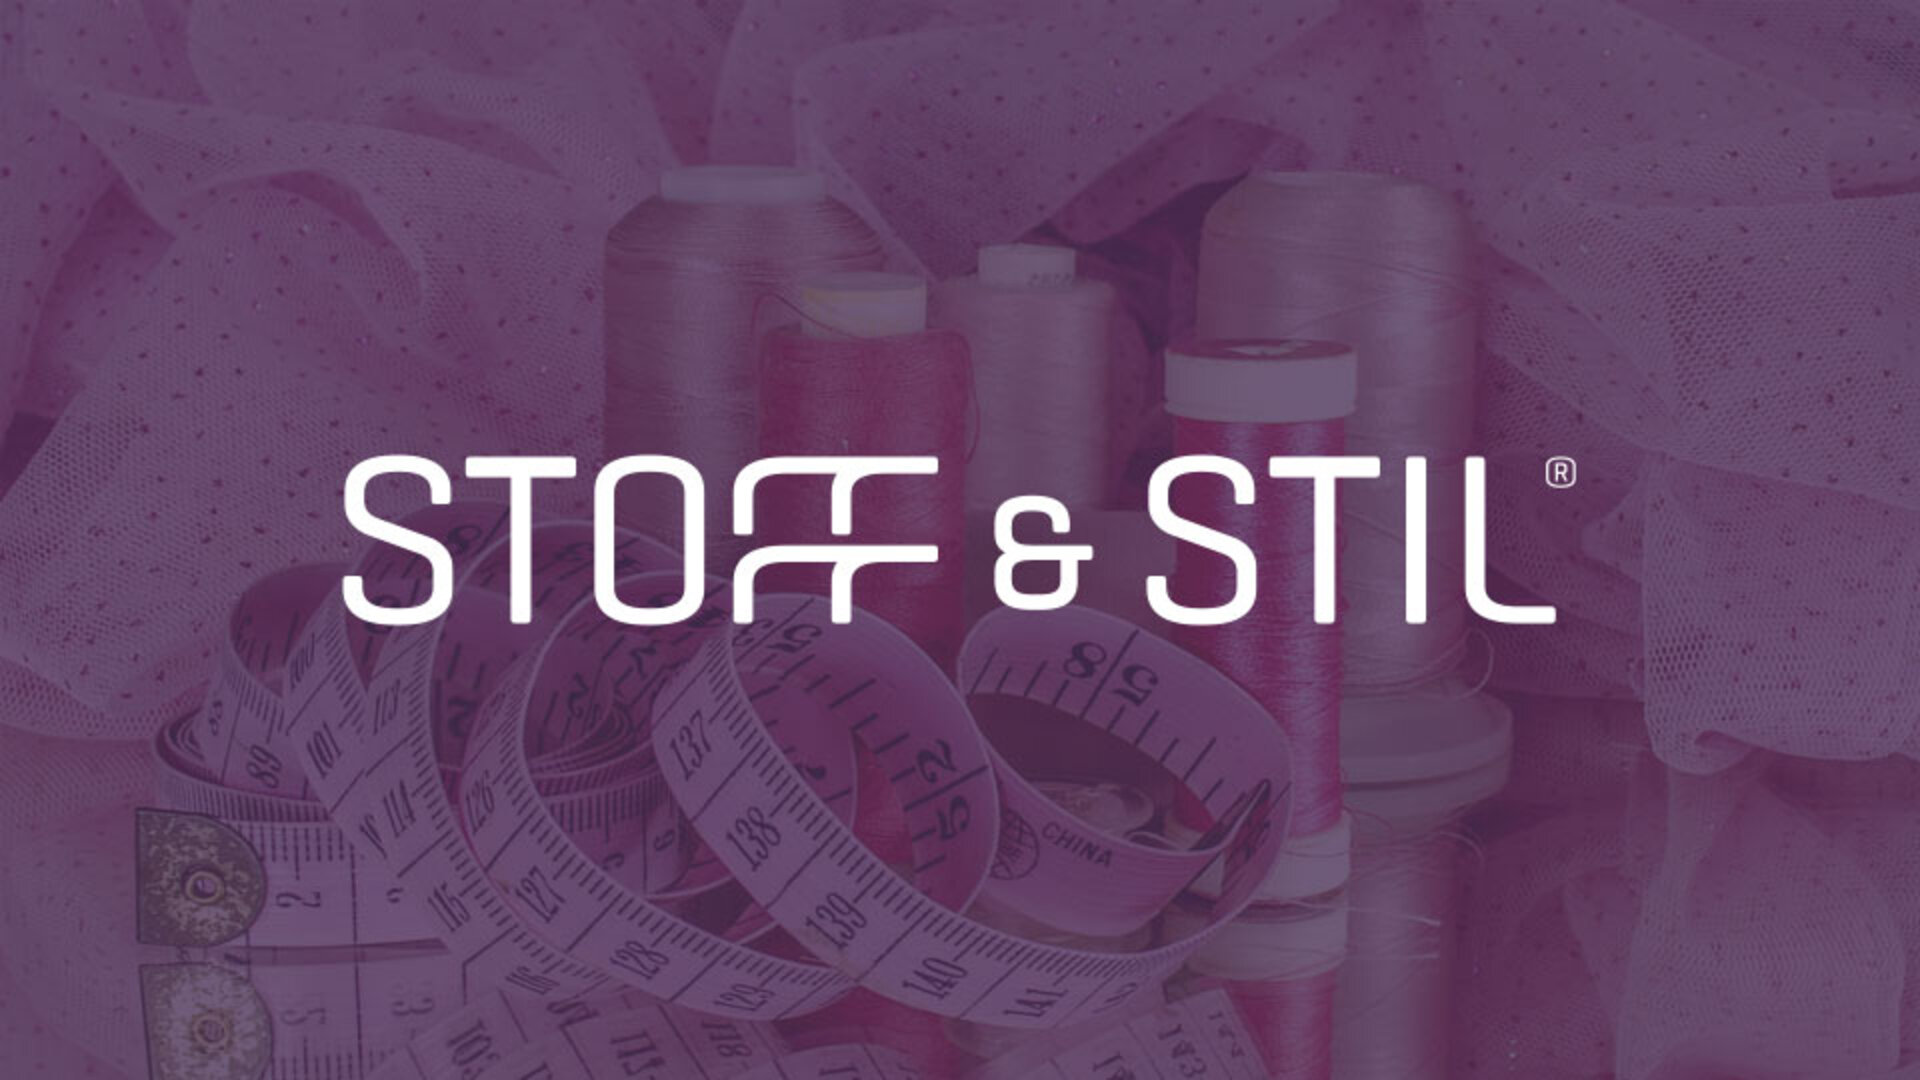 Stoff & Stil logo